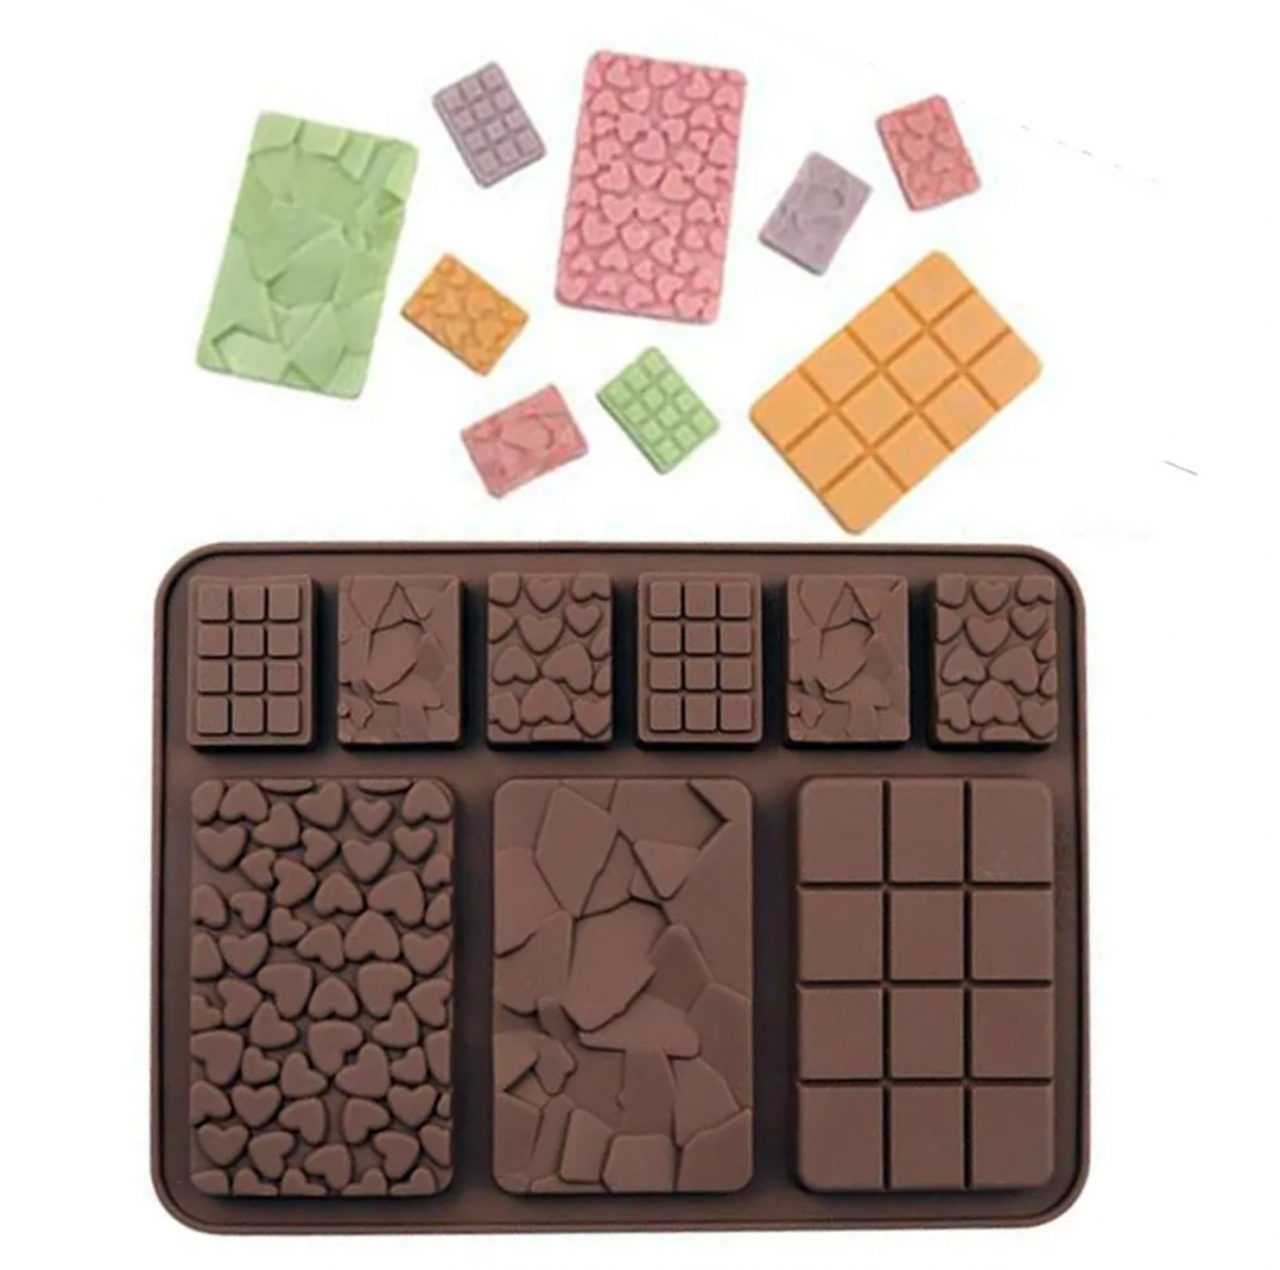 Szilikon csokoládé forma – Táblás csokoládék – 3 nagy és 6 kicsi csokoládé